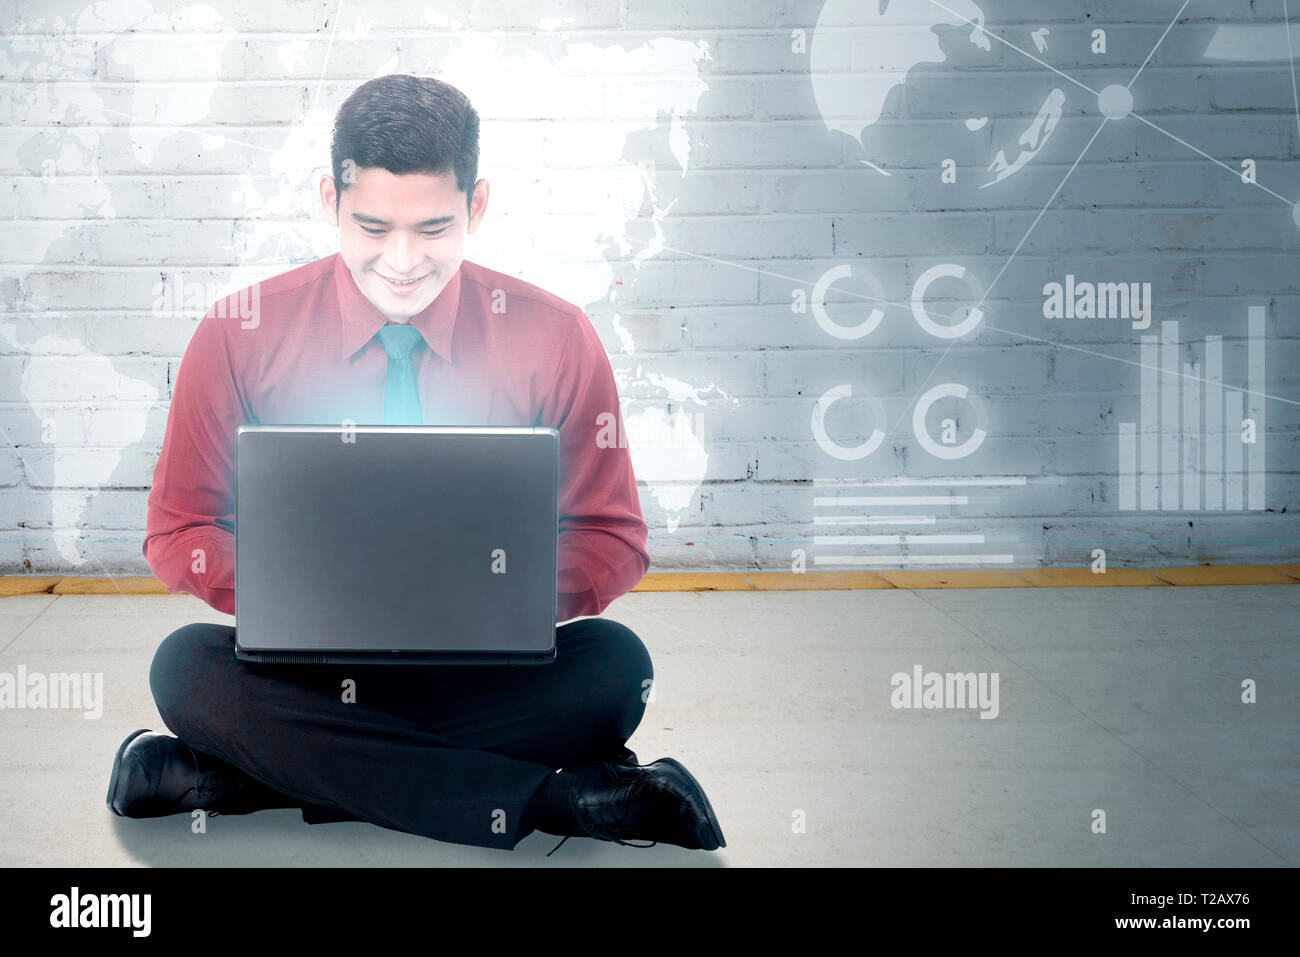 Smiling asian businessman sitting et l'aide d'un ordinateur portable avec écran virtuel qui l'affichage de l'interface graphique et cartes du monde financier. Les technologies numériques Banque D'Images